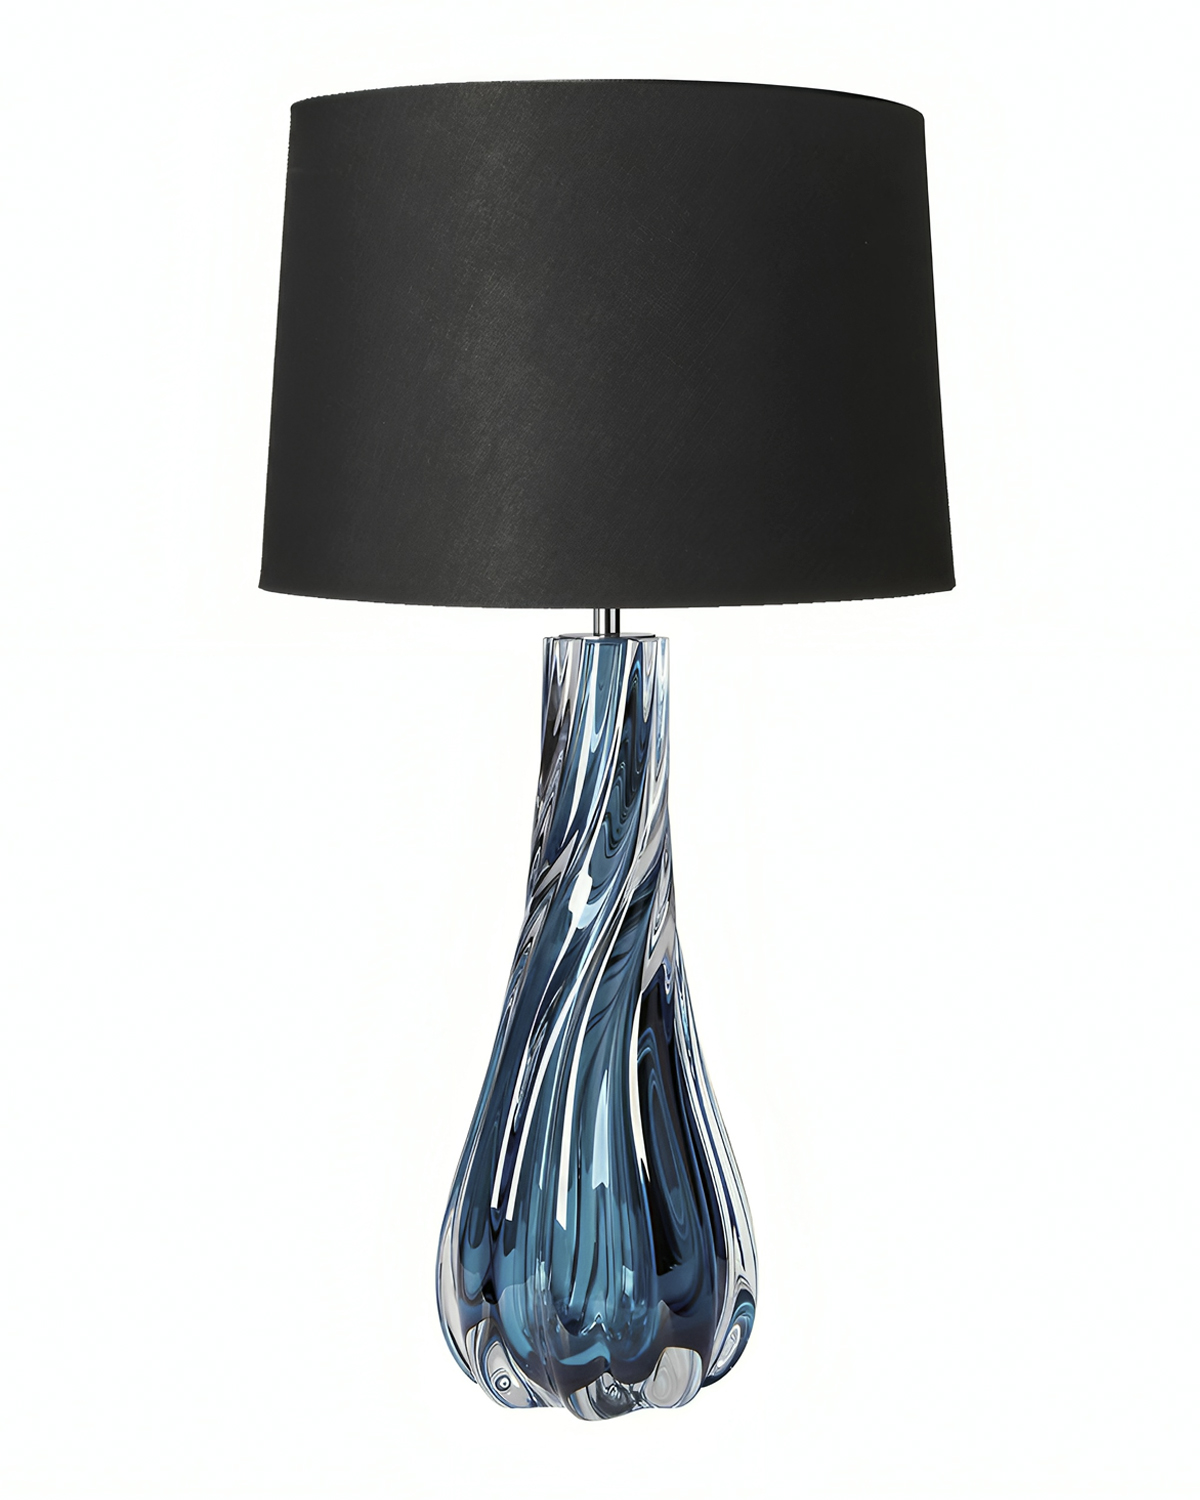 Синяя настольная лампа "Коламбус" с черным абажуром